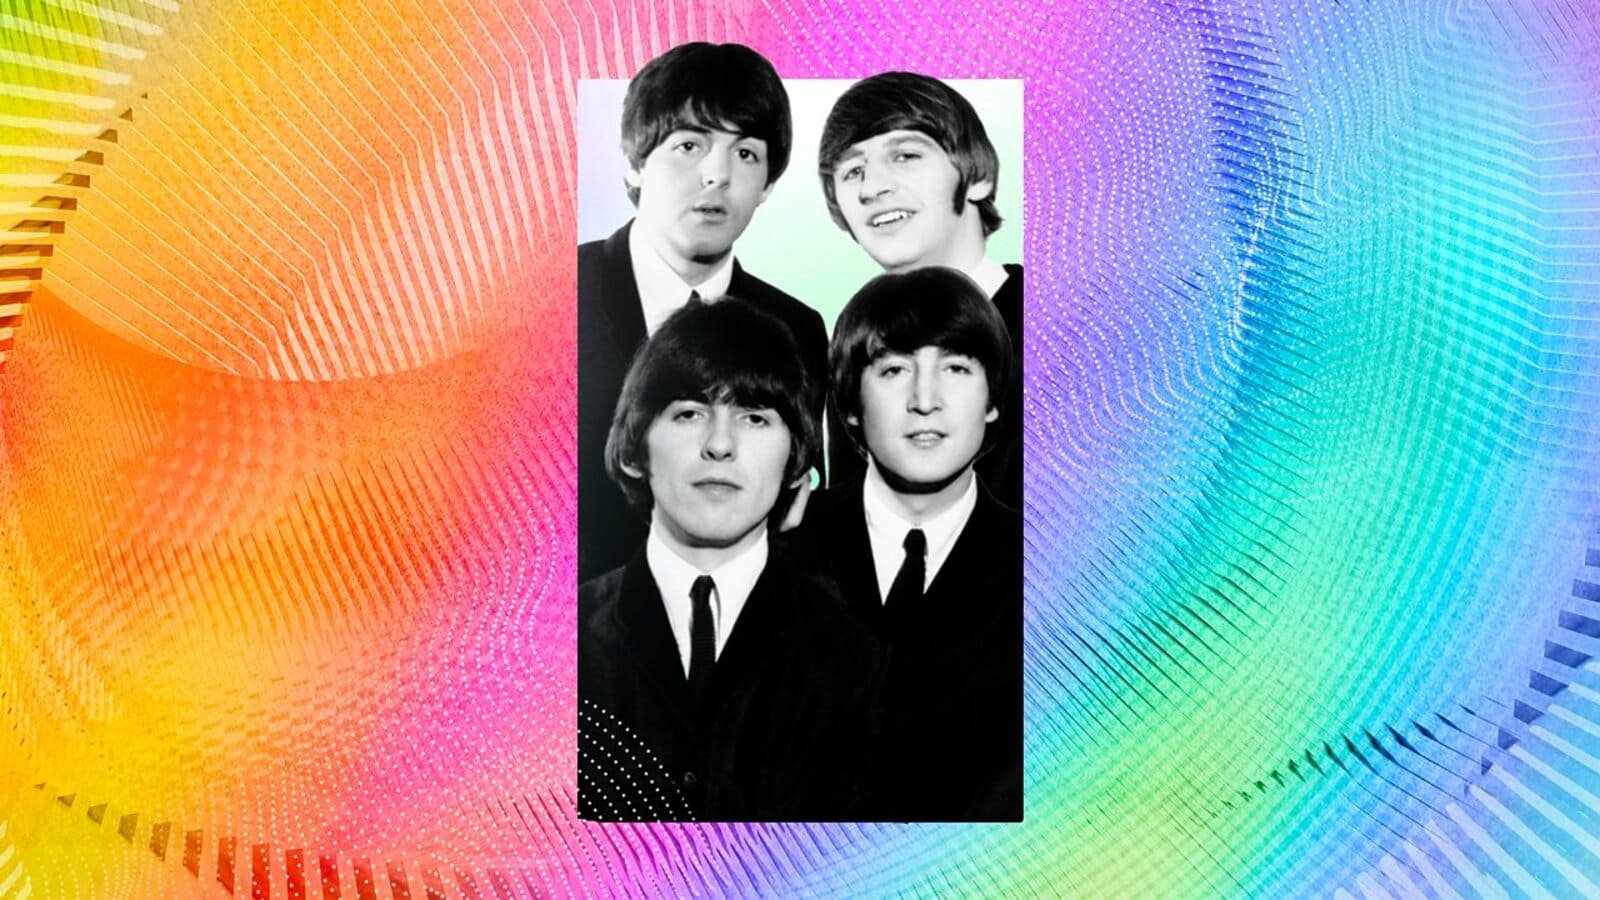 Paul McCartney Reveals John Lennon's Reaction to New The Beatles Song